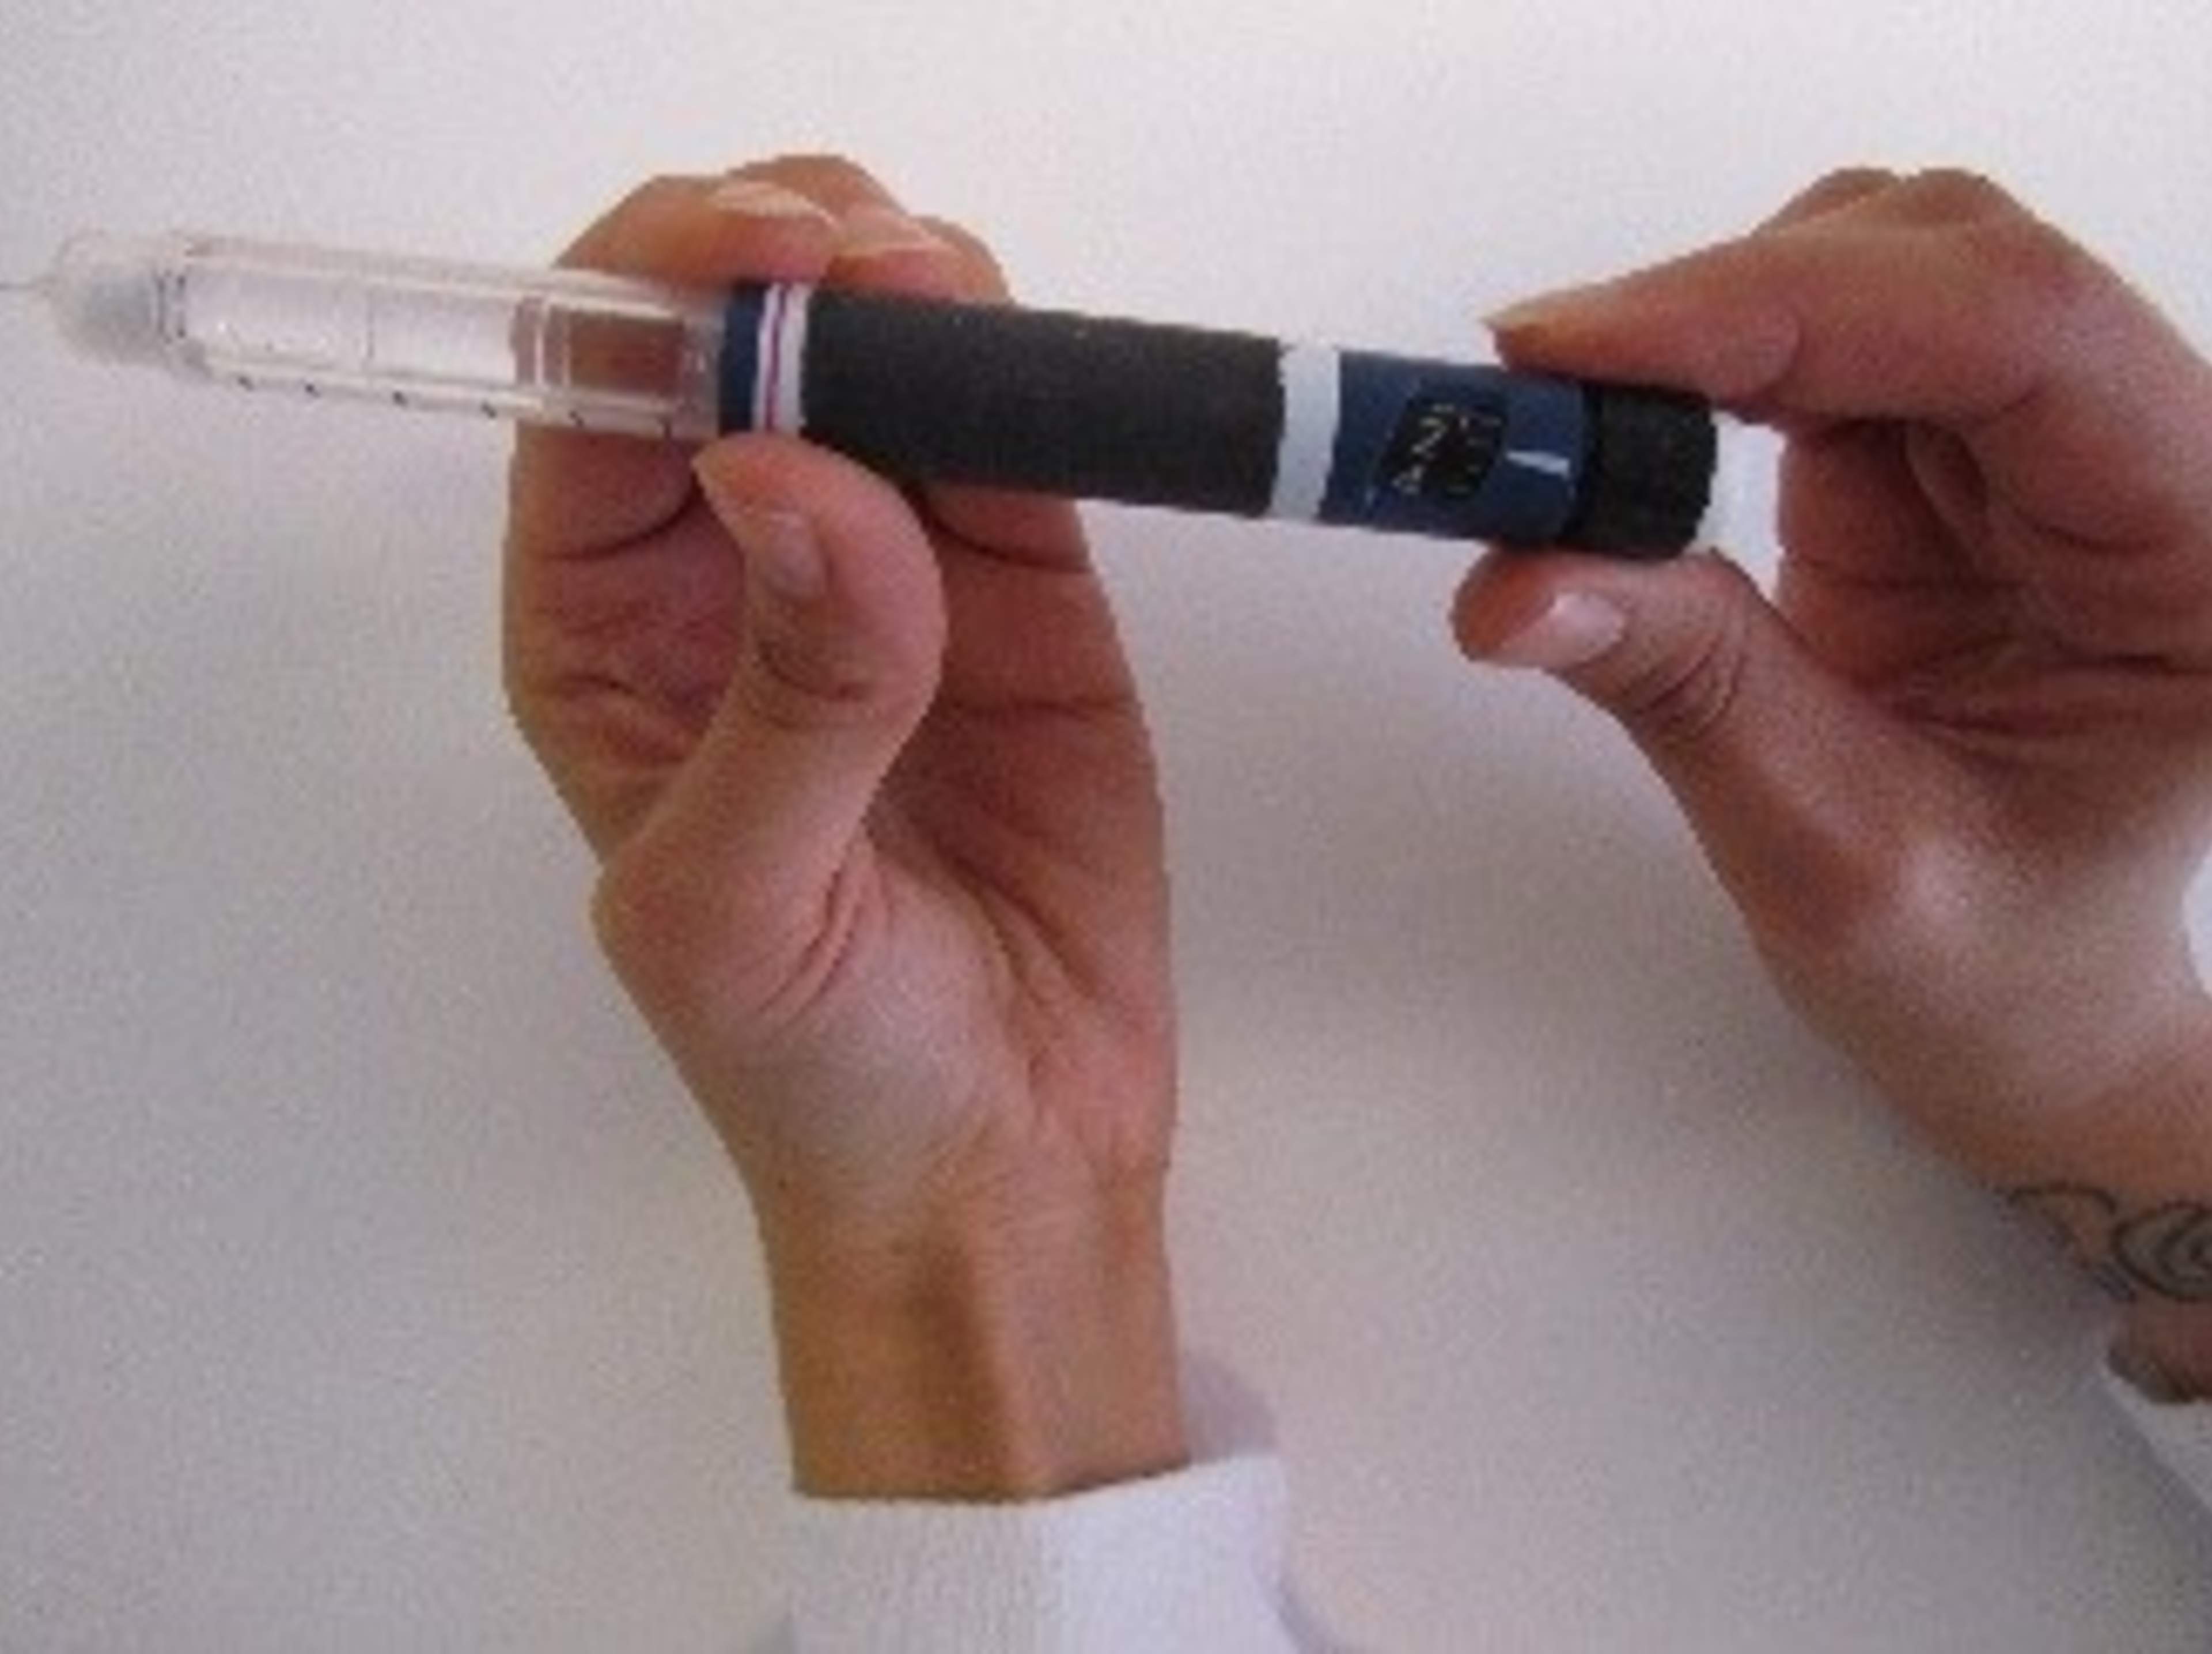 Kuvassa vasen käsi pitää insuliinineulaa paikallaan kun oikealla kädellä asetetaan haluttu annos kääntämällä kynän päästä.